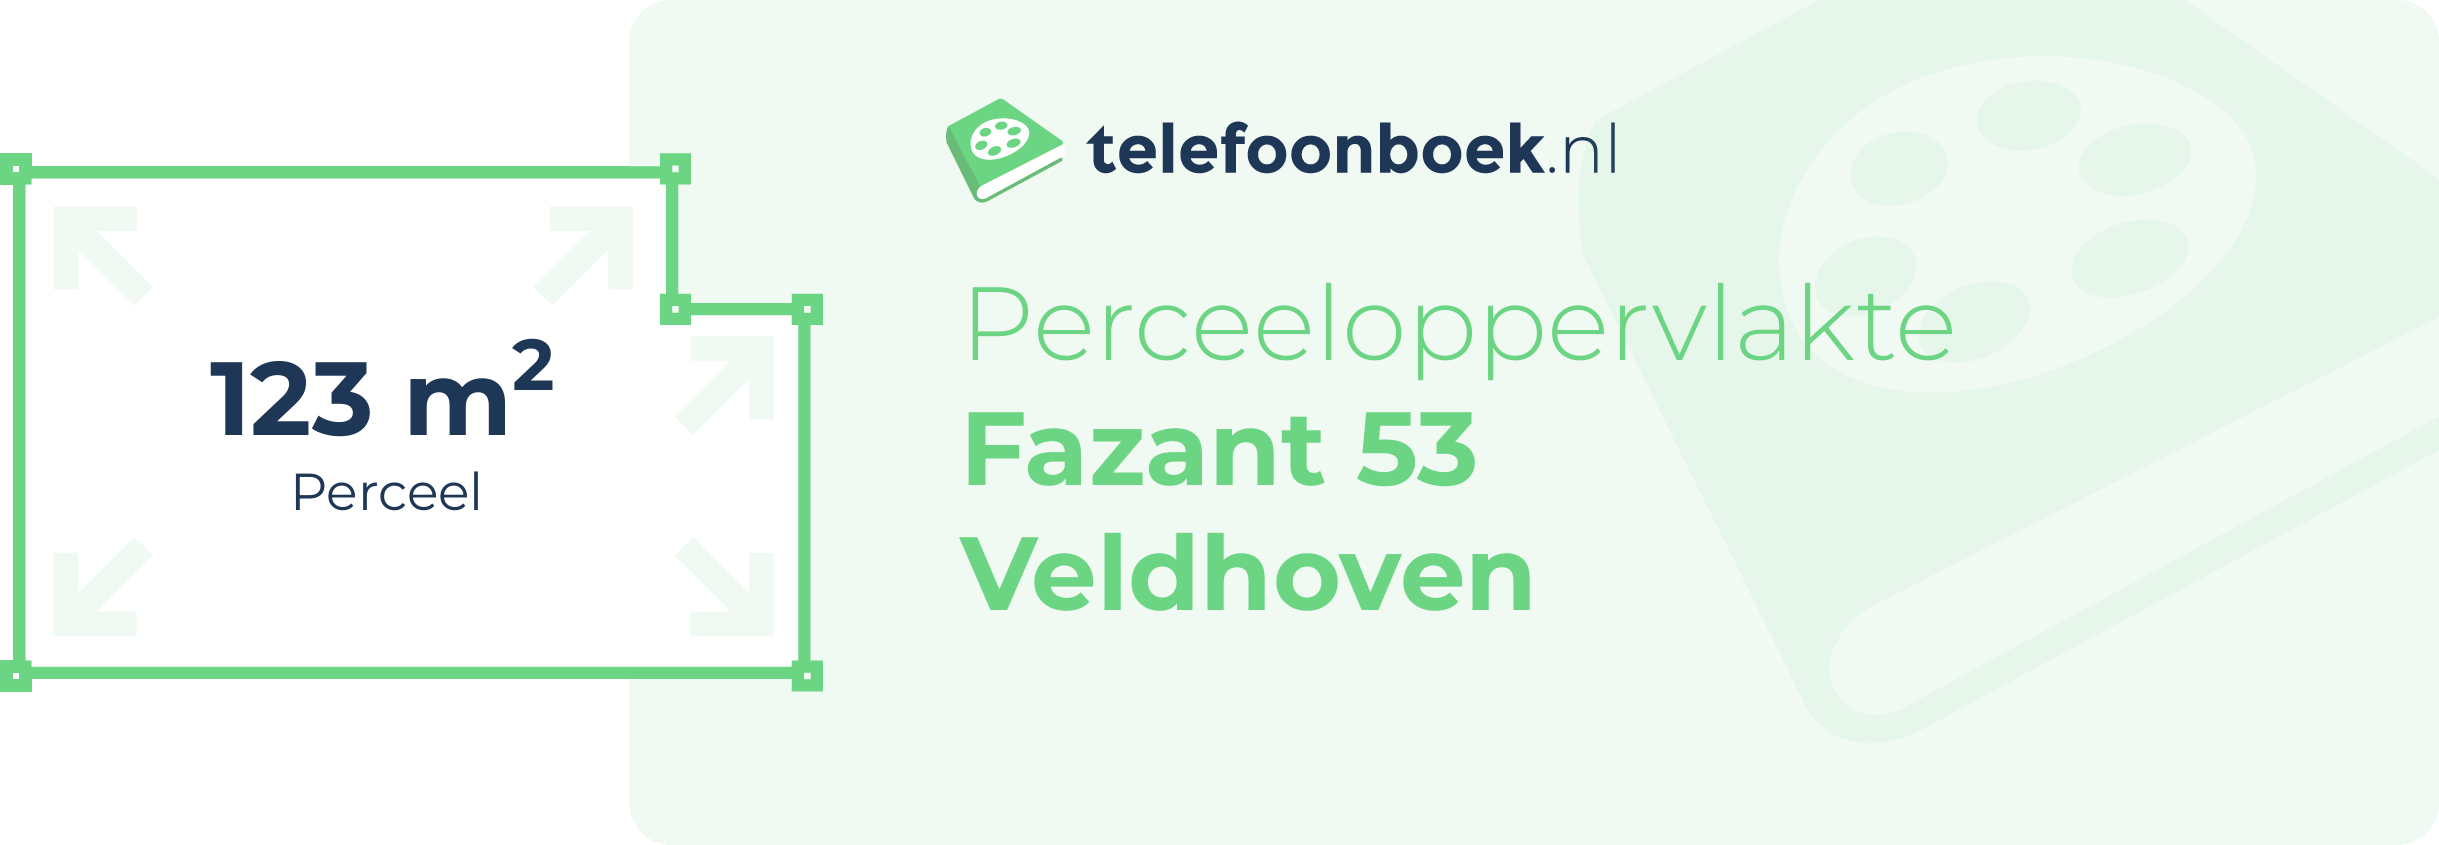 Perceeloppervlakte Fazant 53 Veldhoven